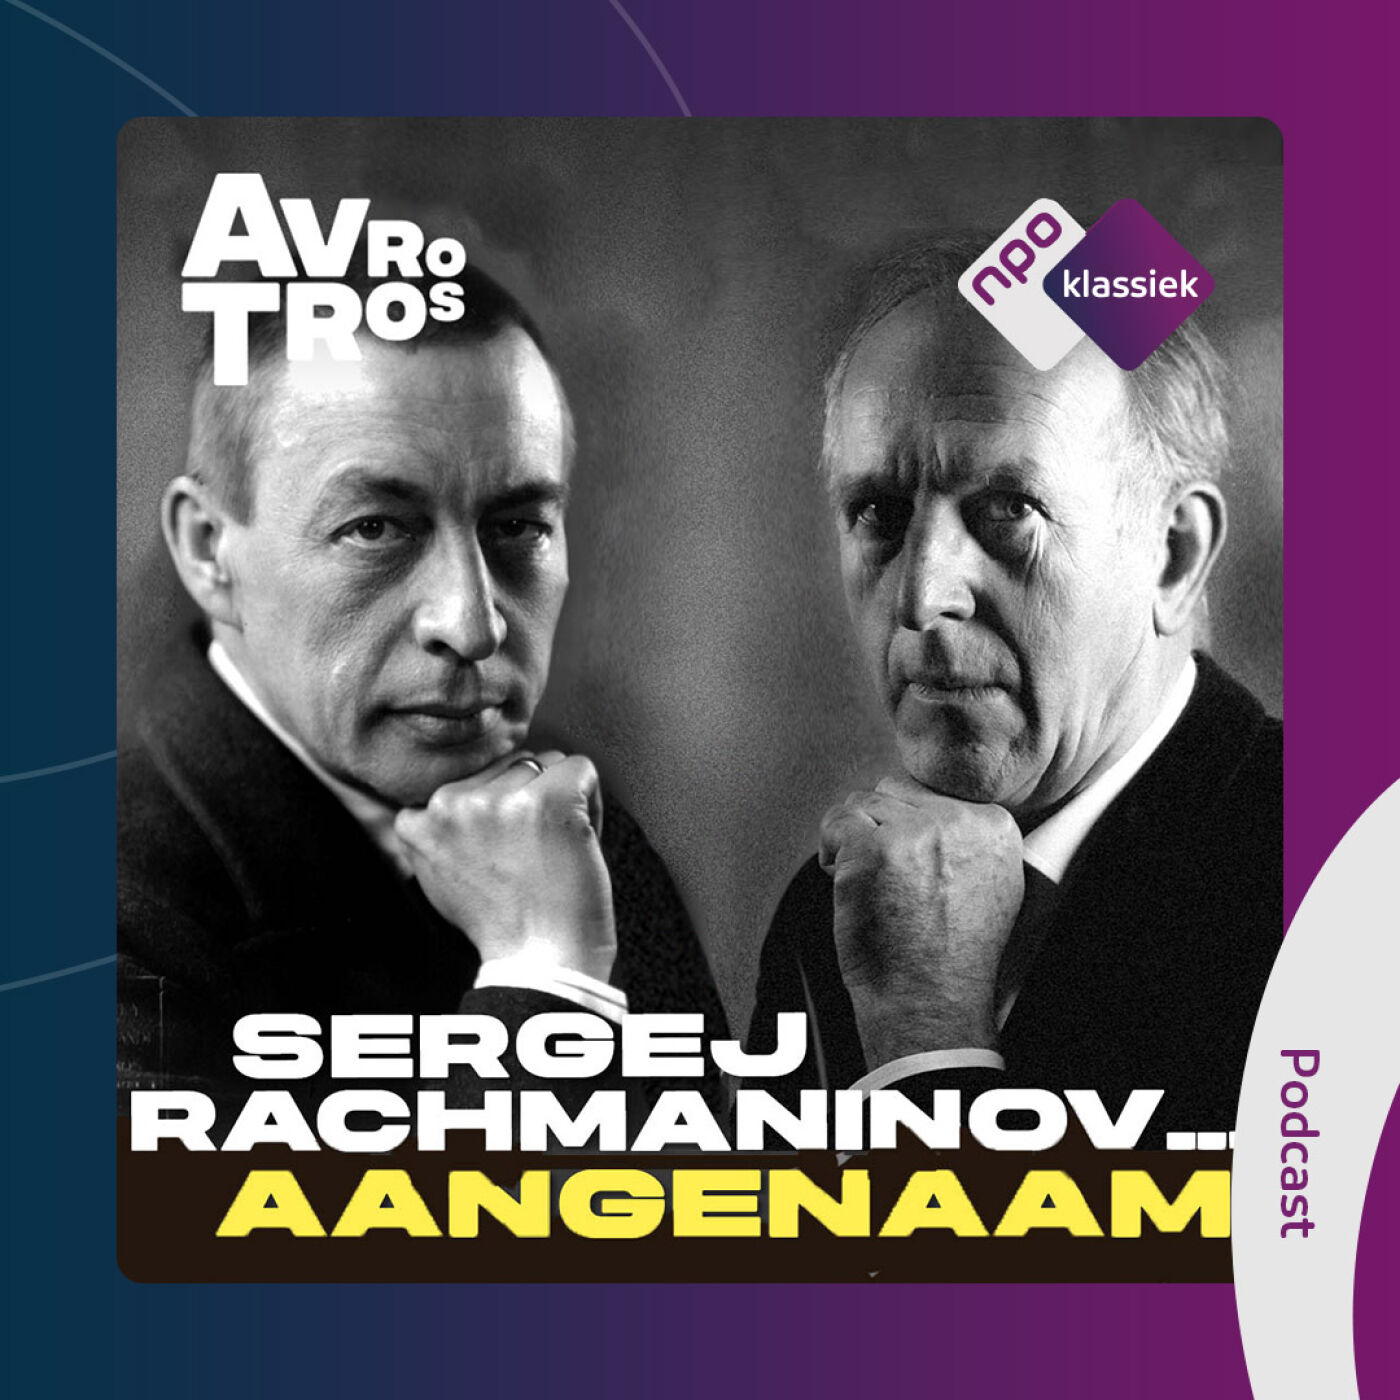 #6 - Rachmaninov... Aangenaam! - 6. The American Dream? (S02)